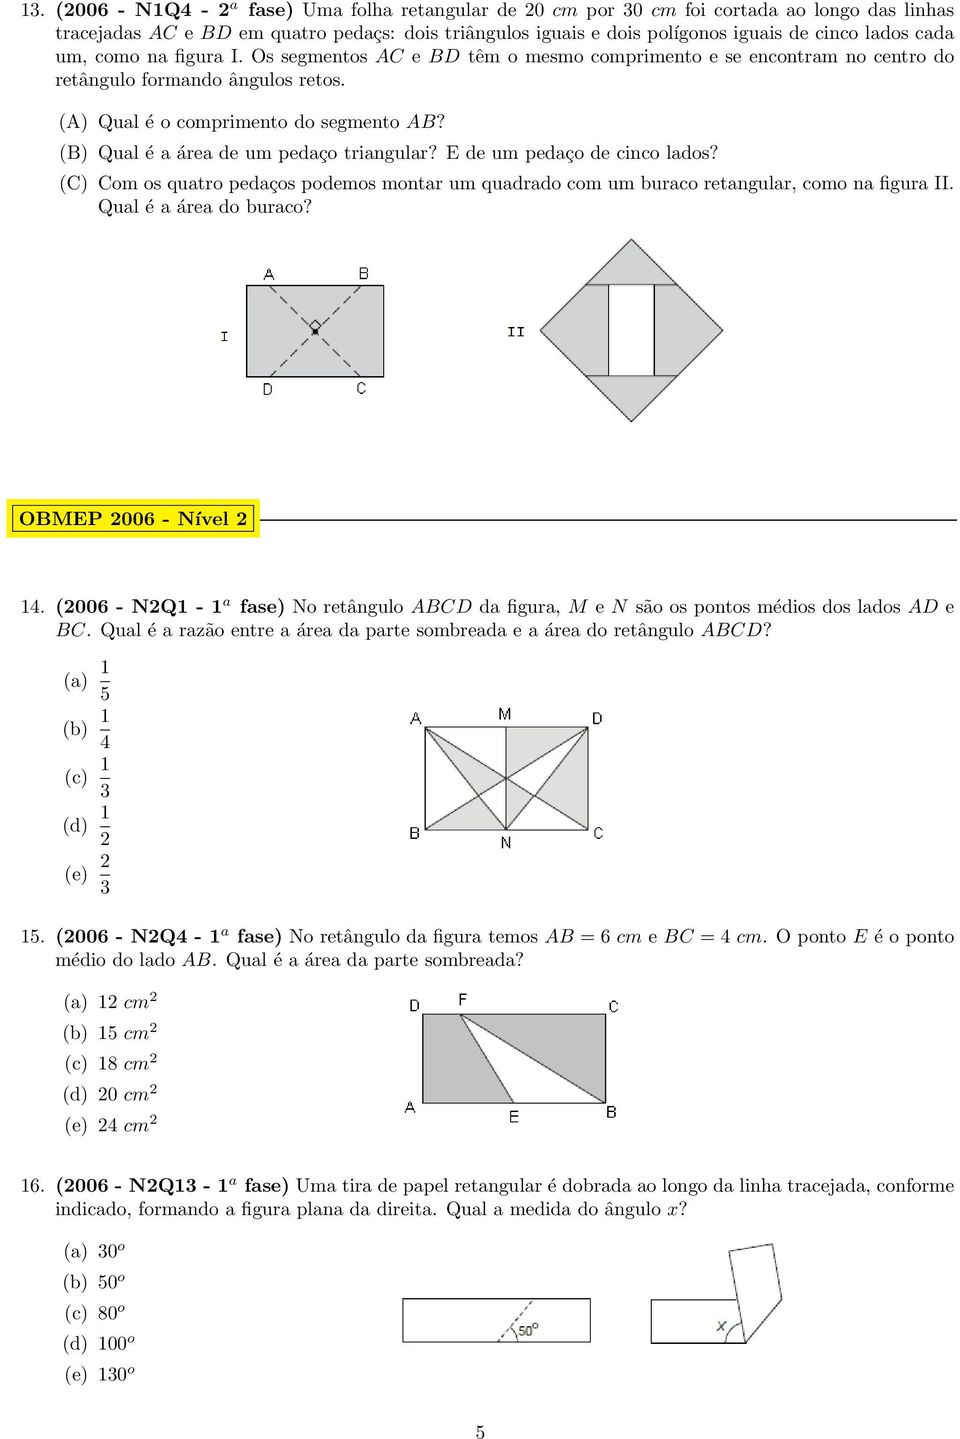 (B) Qual é a área de um pedaço triangular? E de um pedaço de cinco lados? (C) Com os quatro pedaços podemos montar um quadrado com um buraco retangular, como na figura II. Qual é a área do buraco?